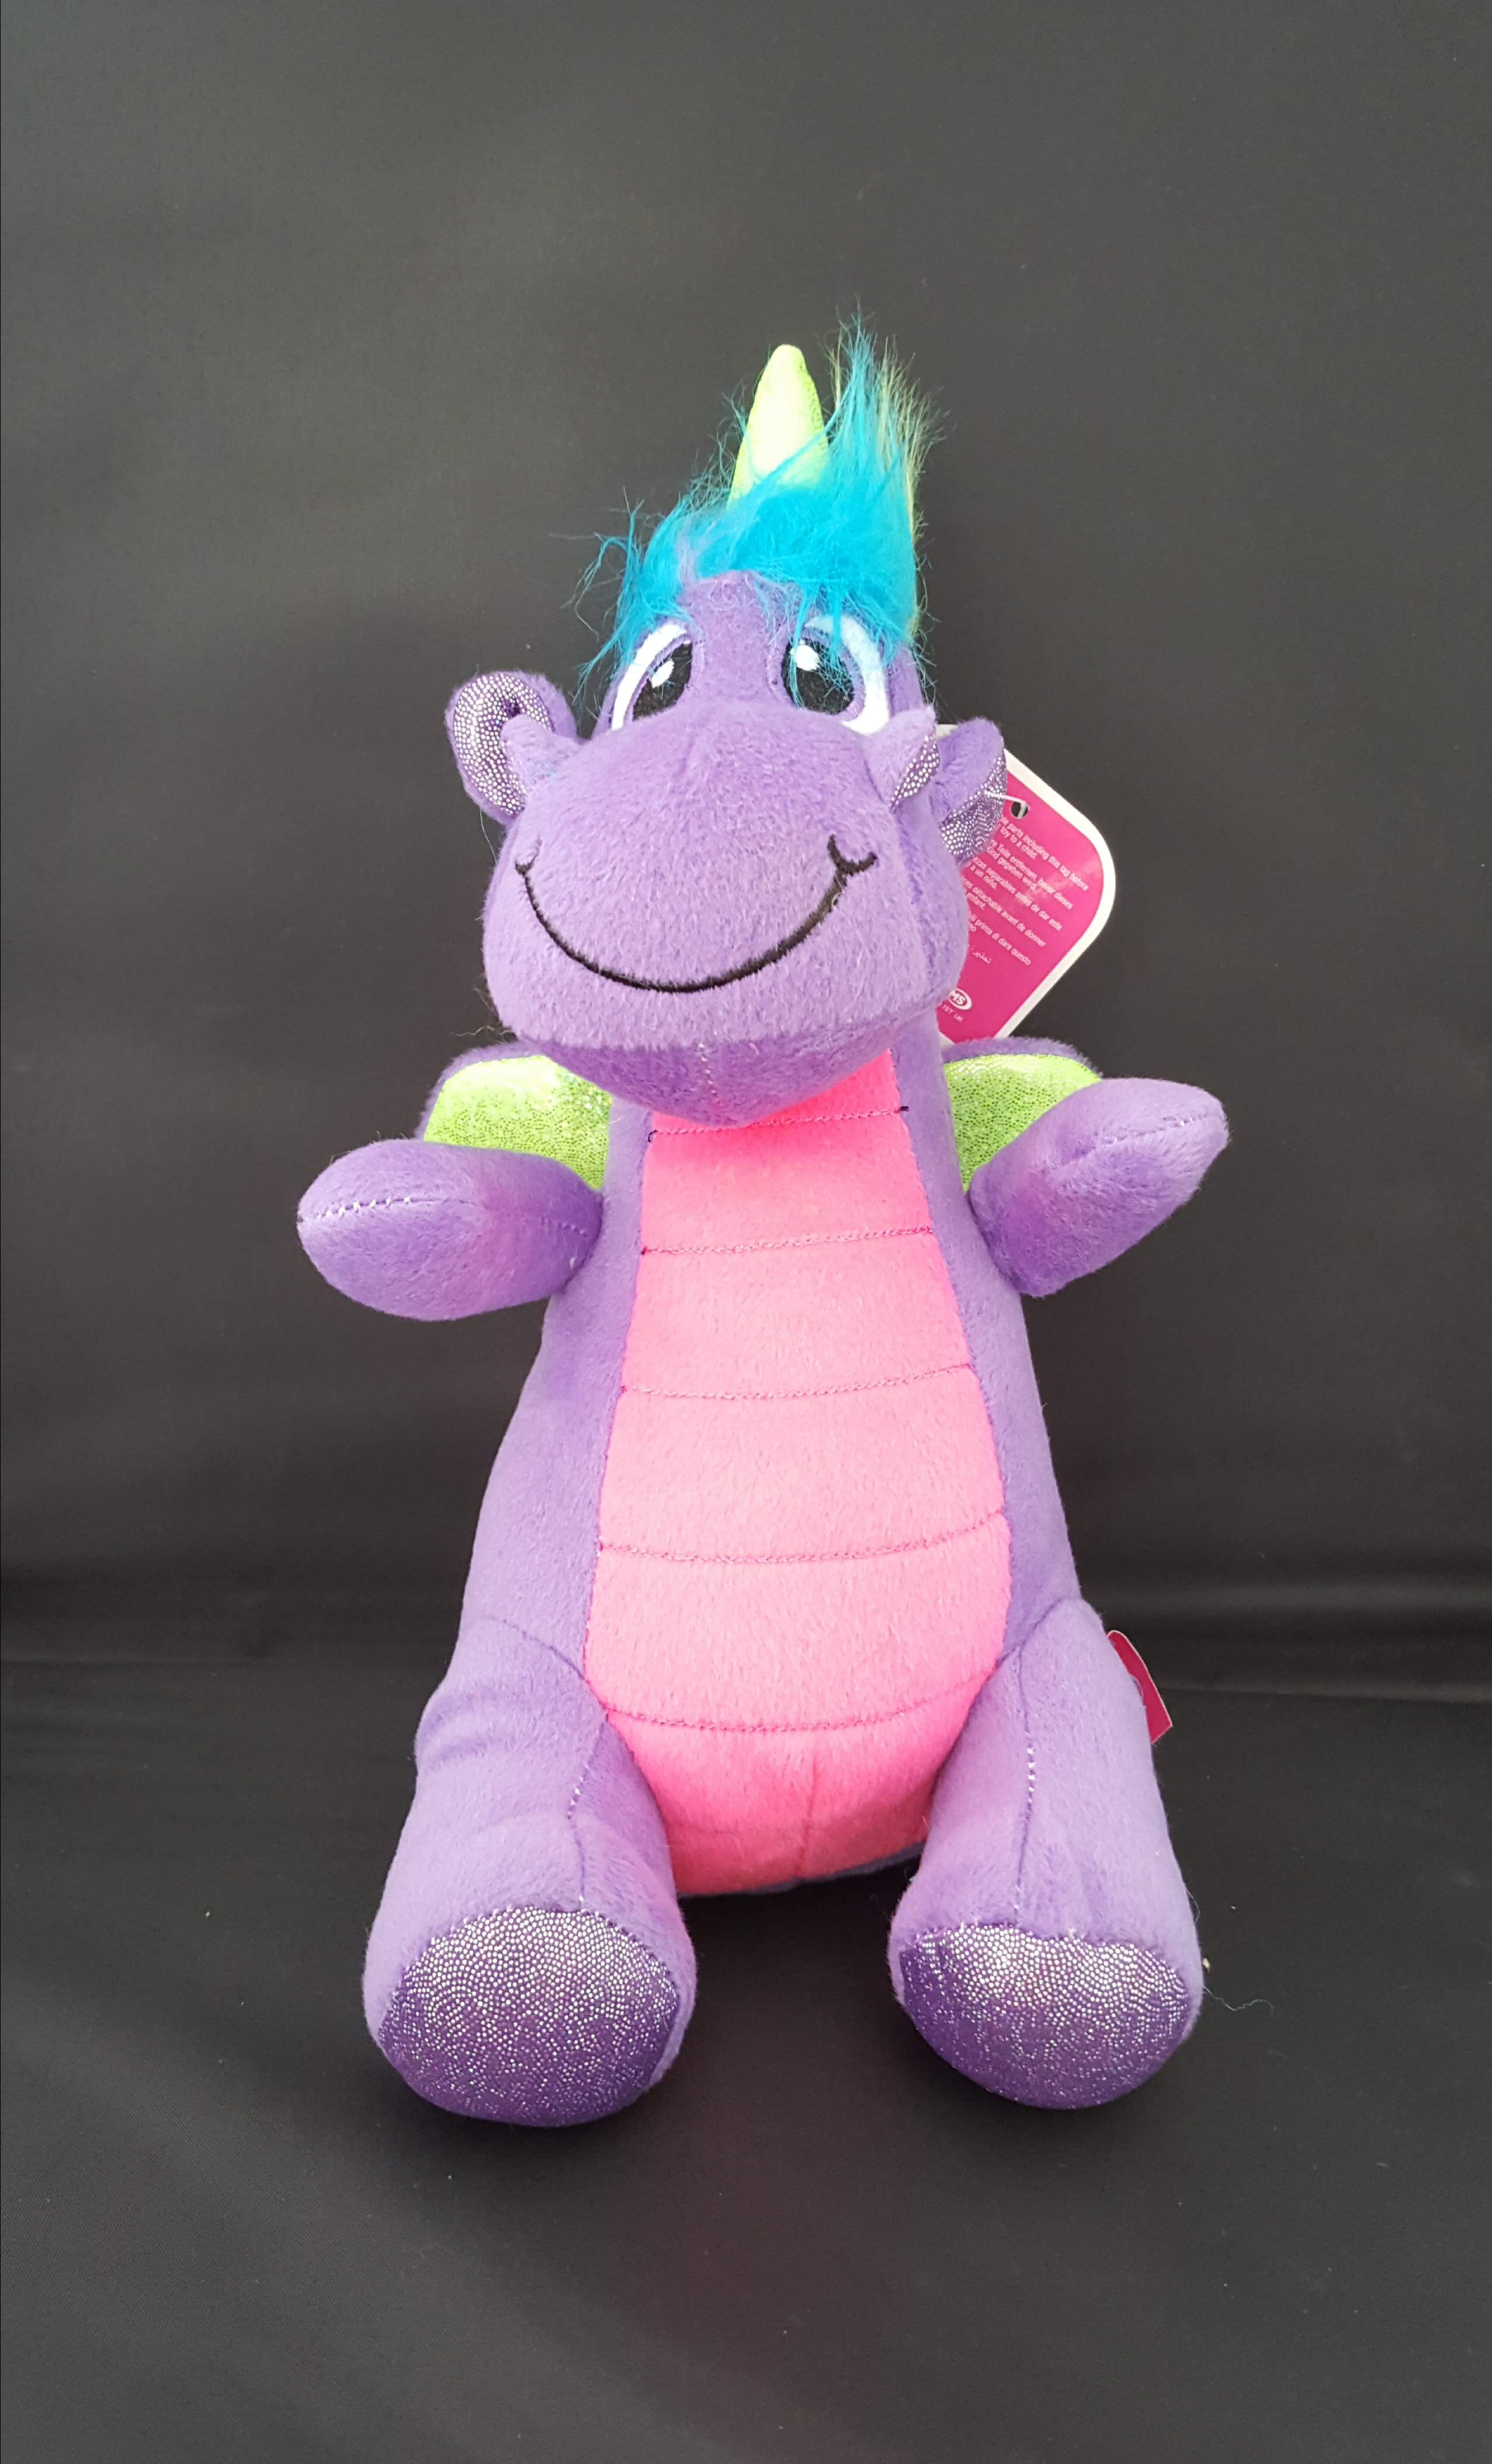 Neon Dragon Kids Soft Plush Toy 8" Pink Purple Green